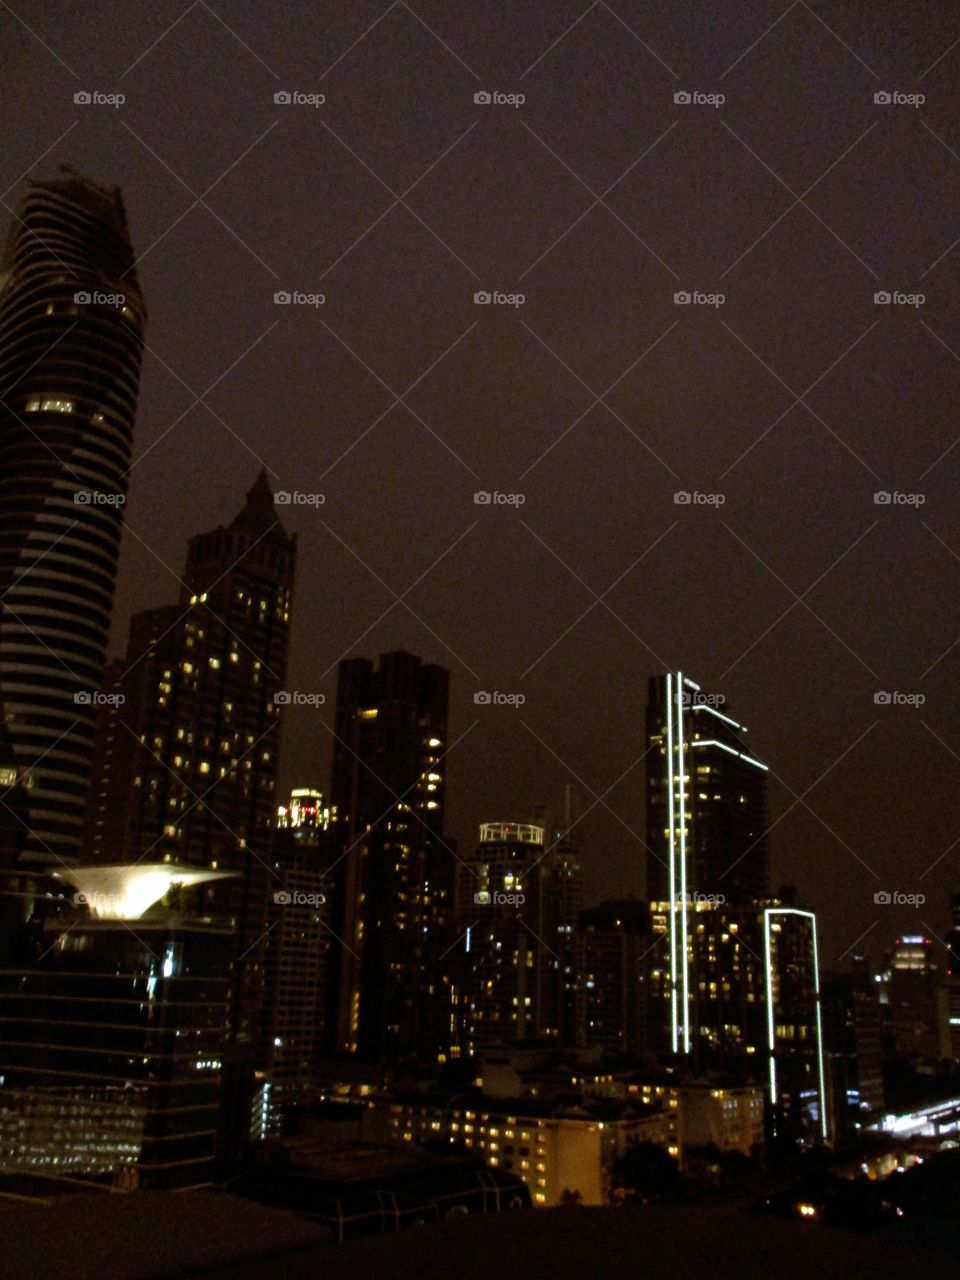 urban city in night time